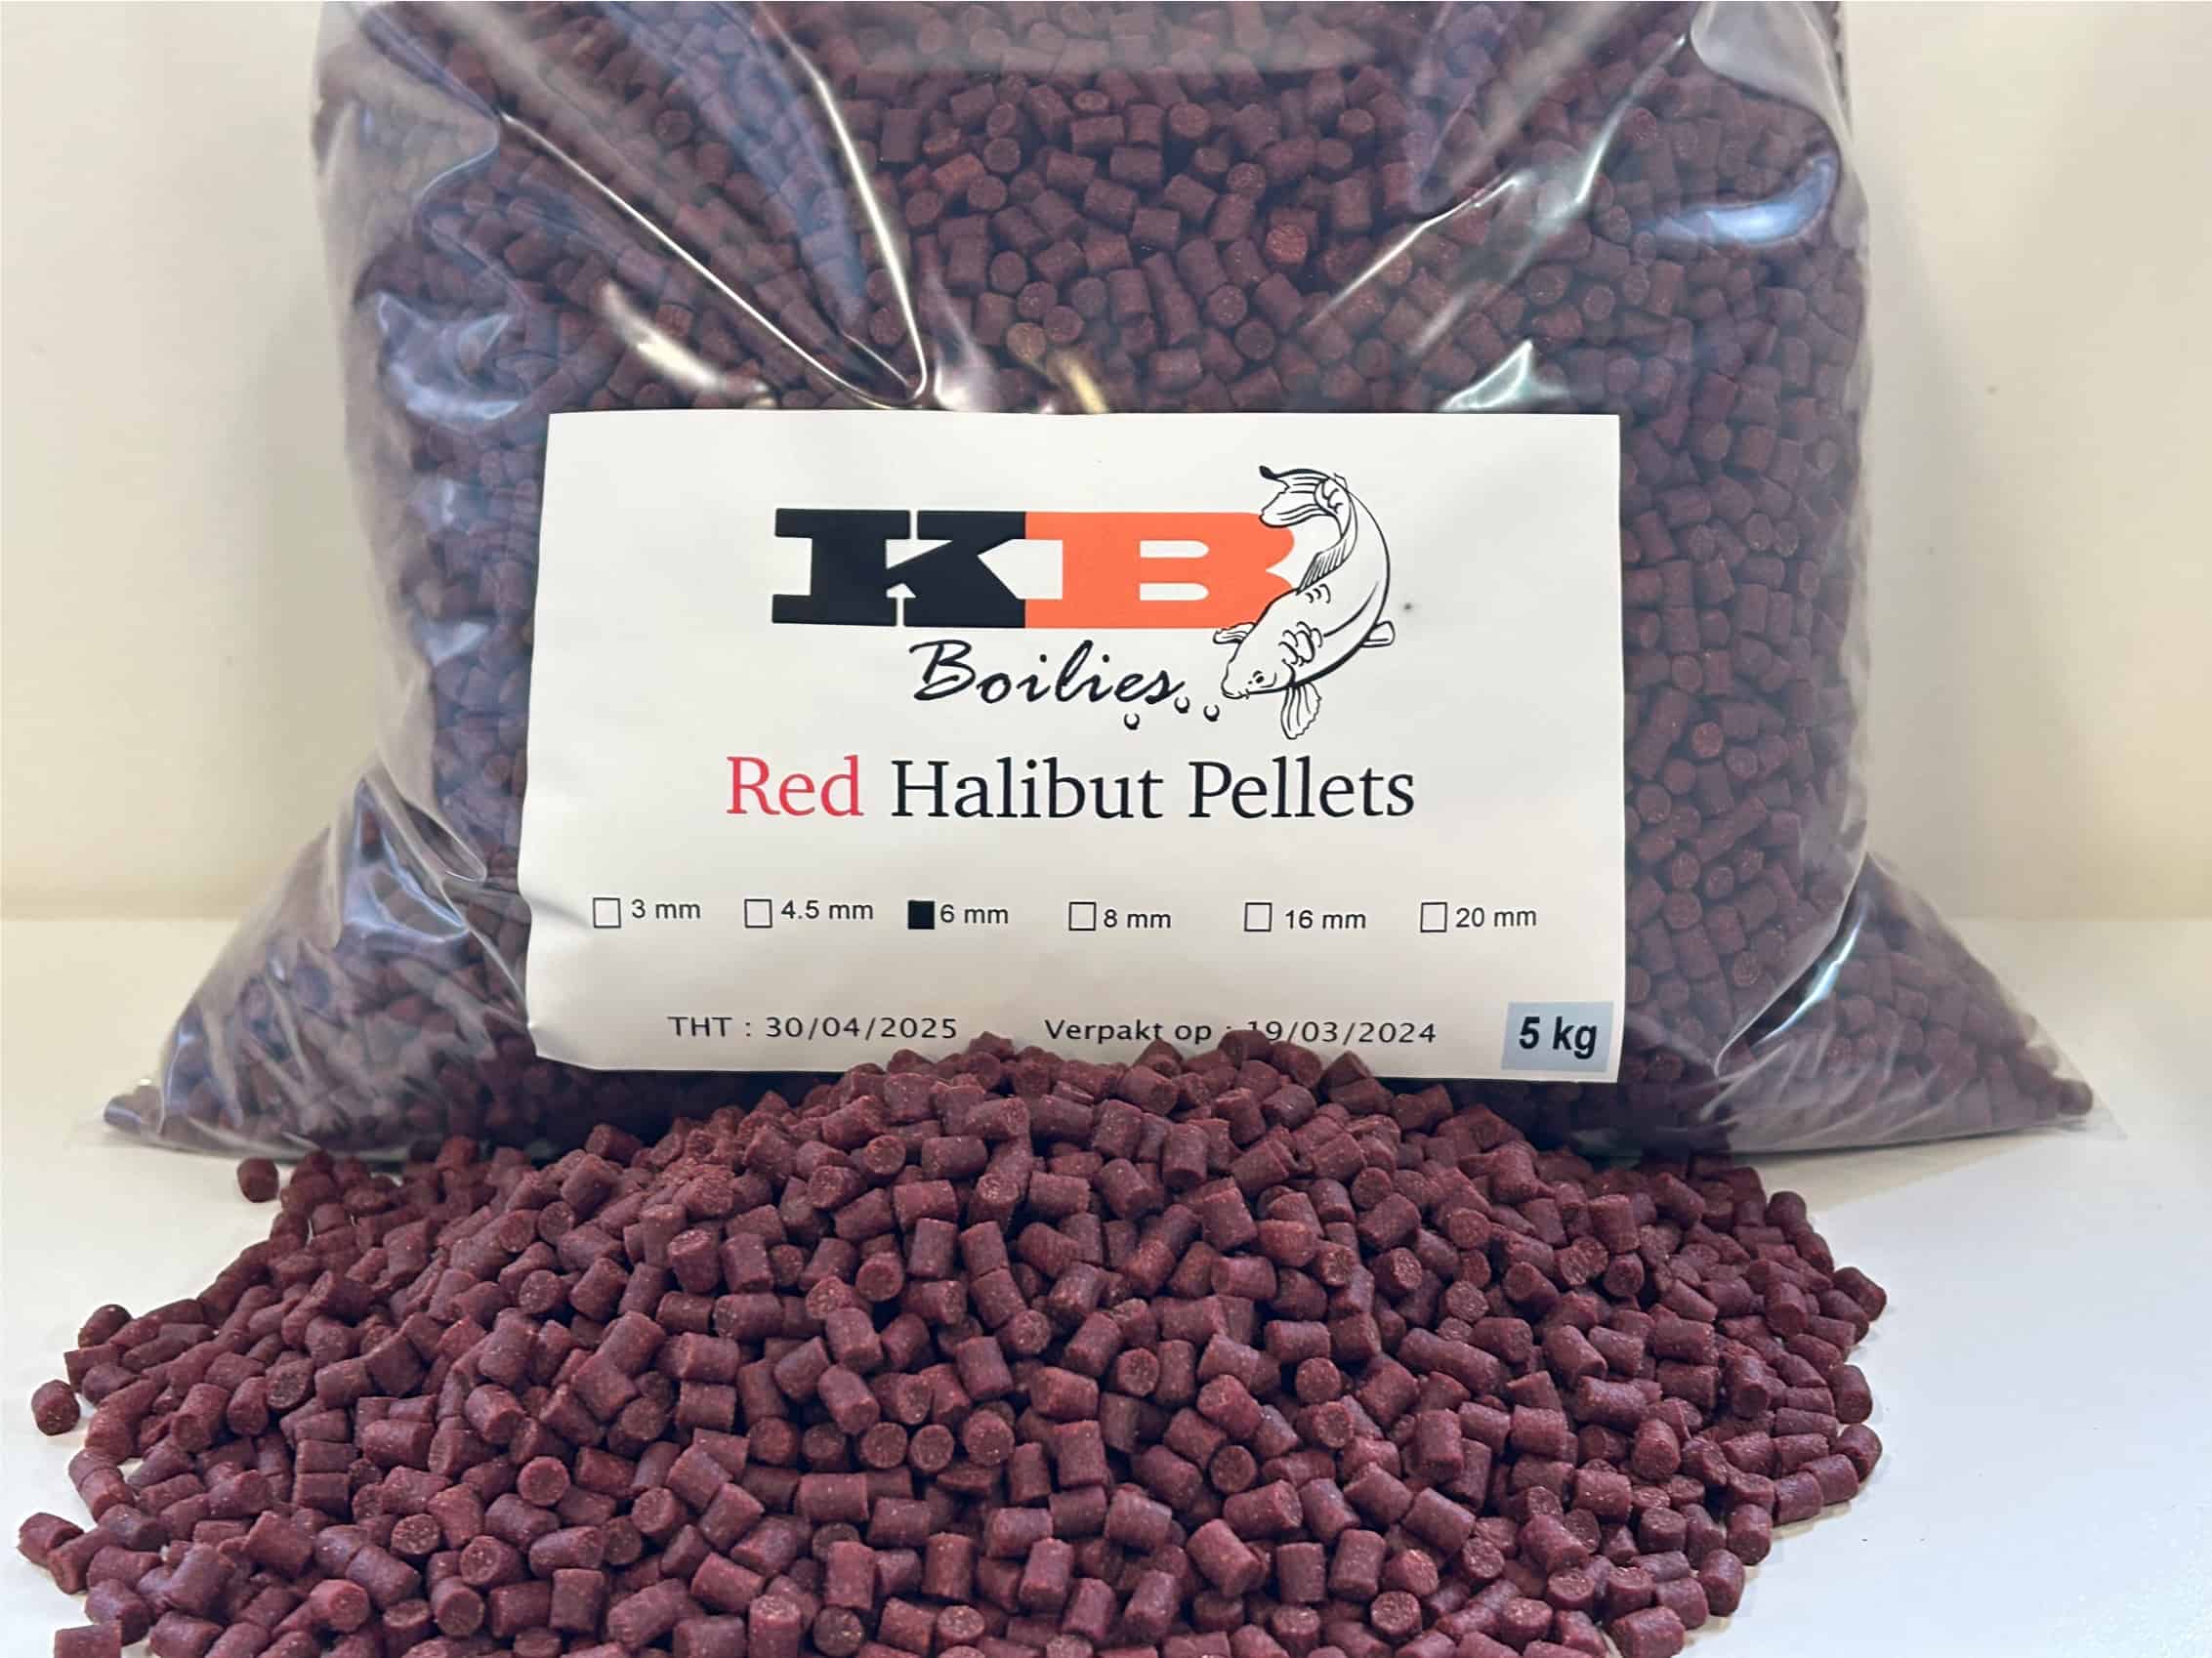 Red Halibut pellets 6mm